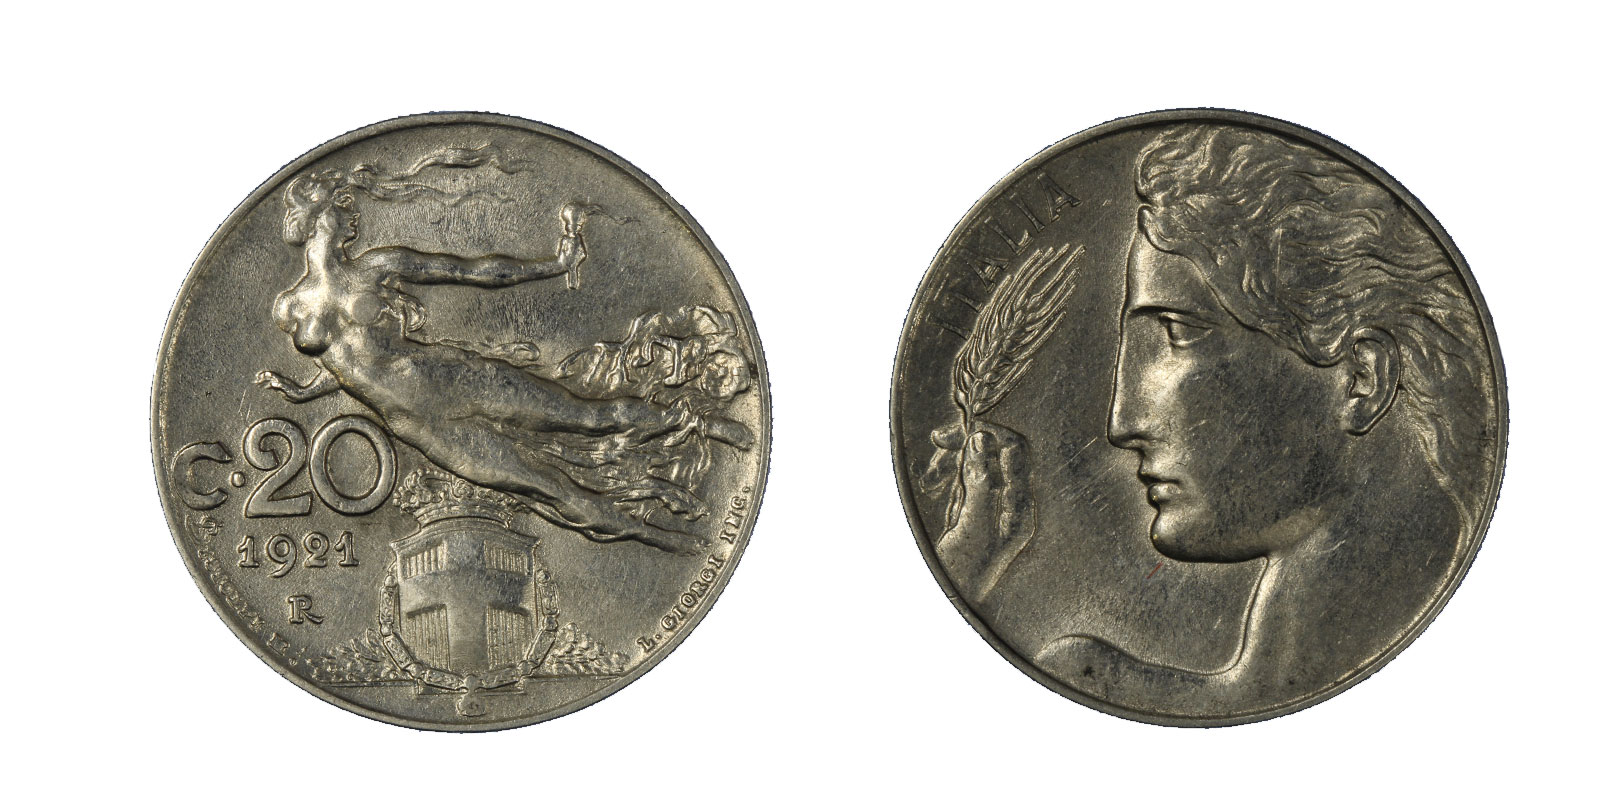 20 centesimi Libertà Librata zecca di Roma